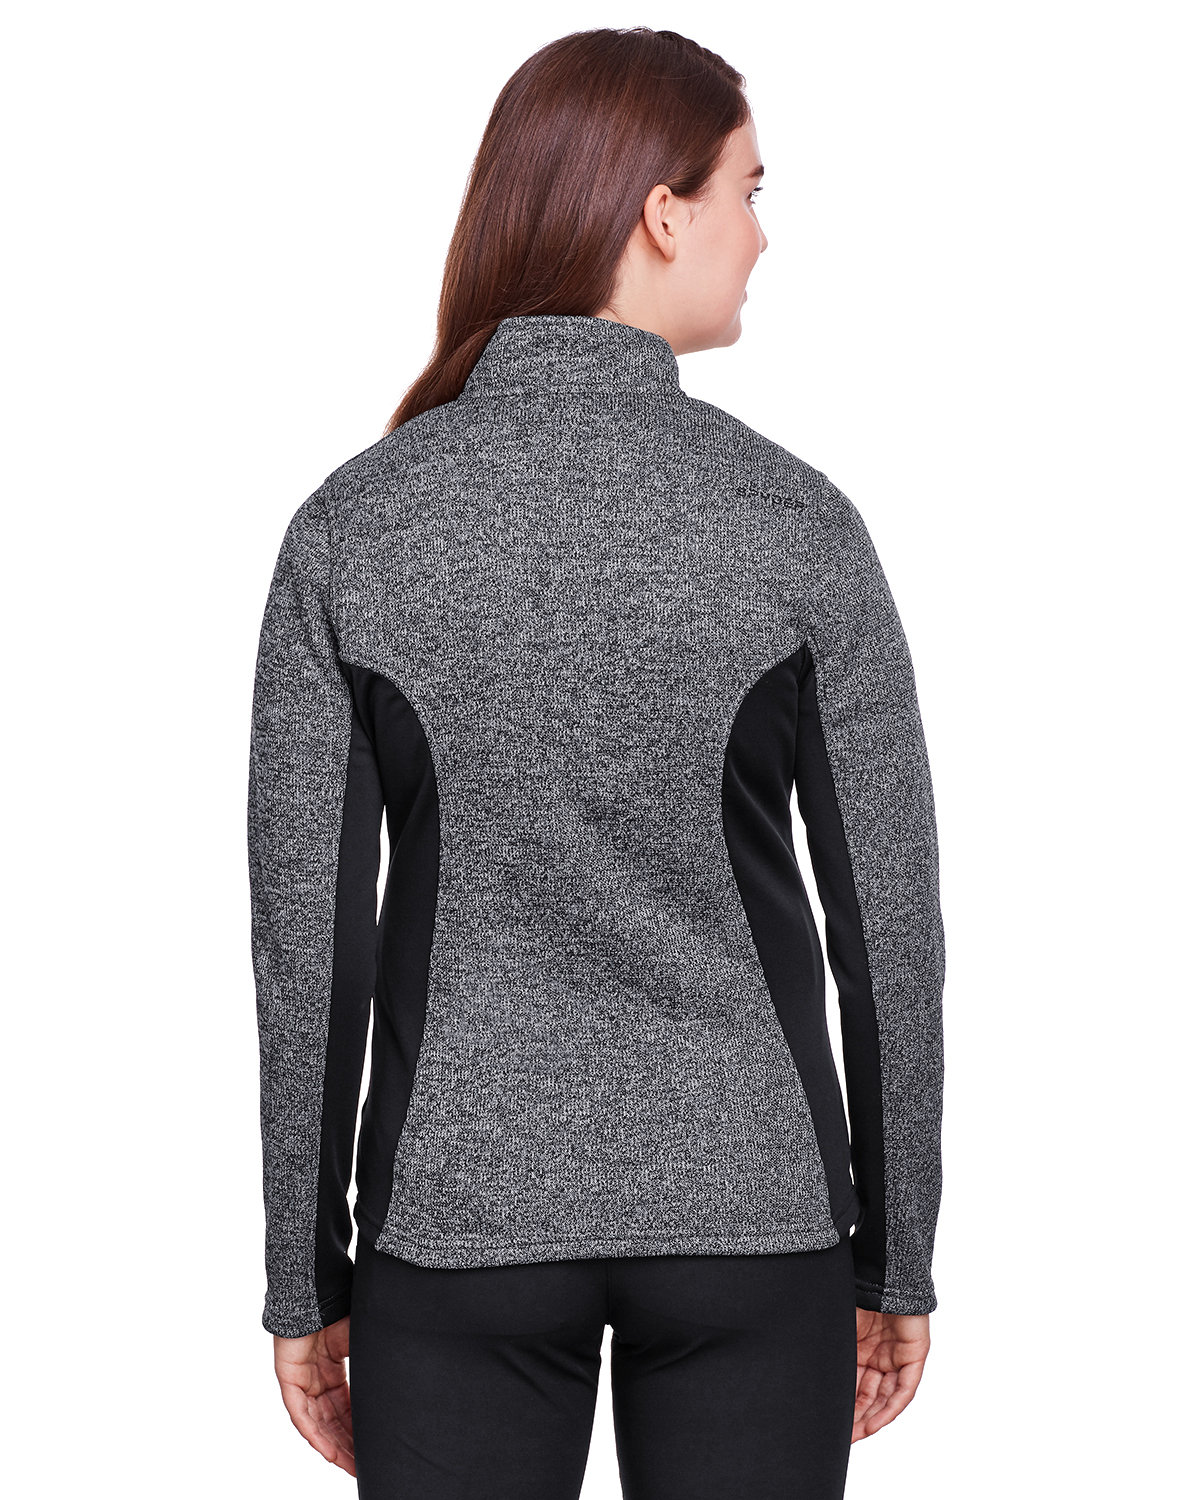 Spyder Ladies' Constant Full-Zip Sweater Fleece Jacket